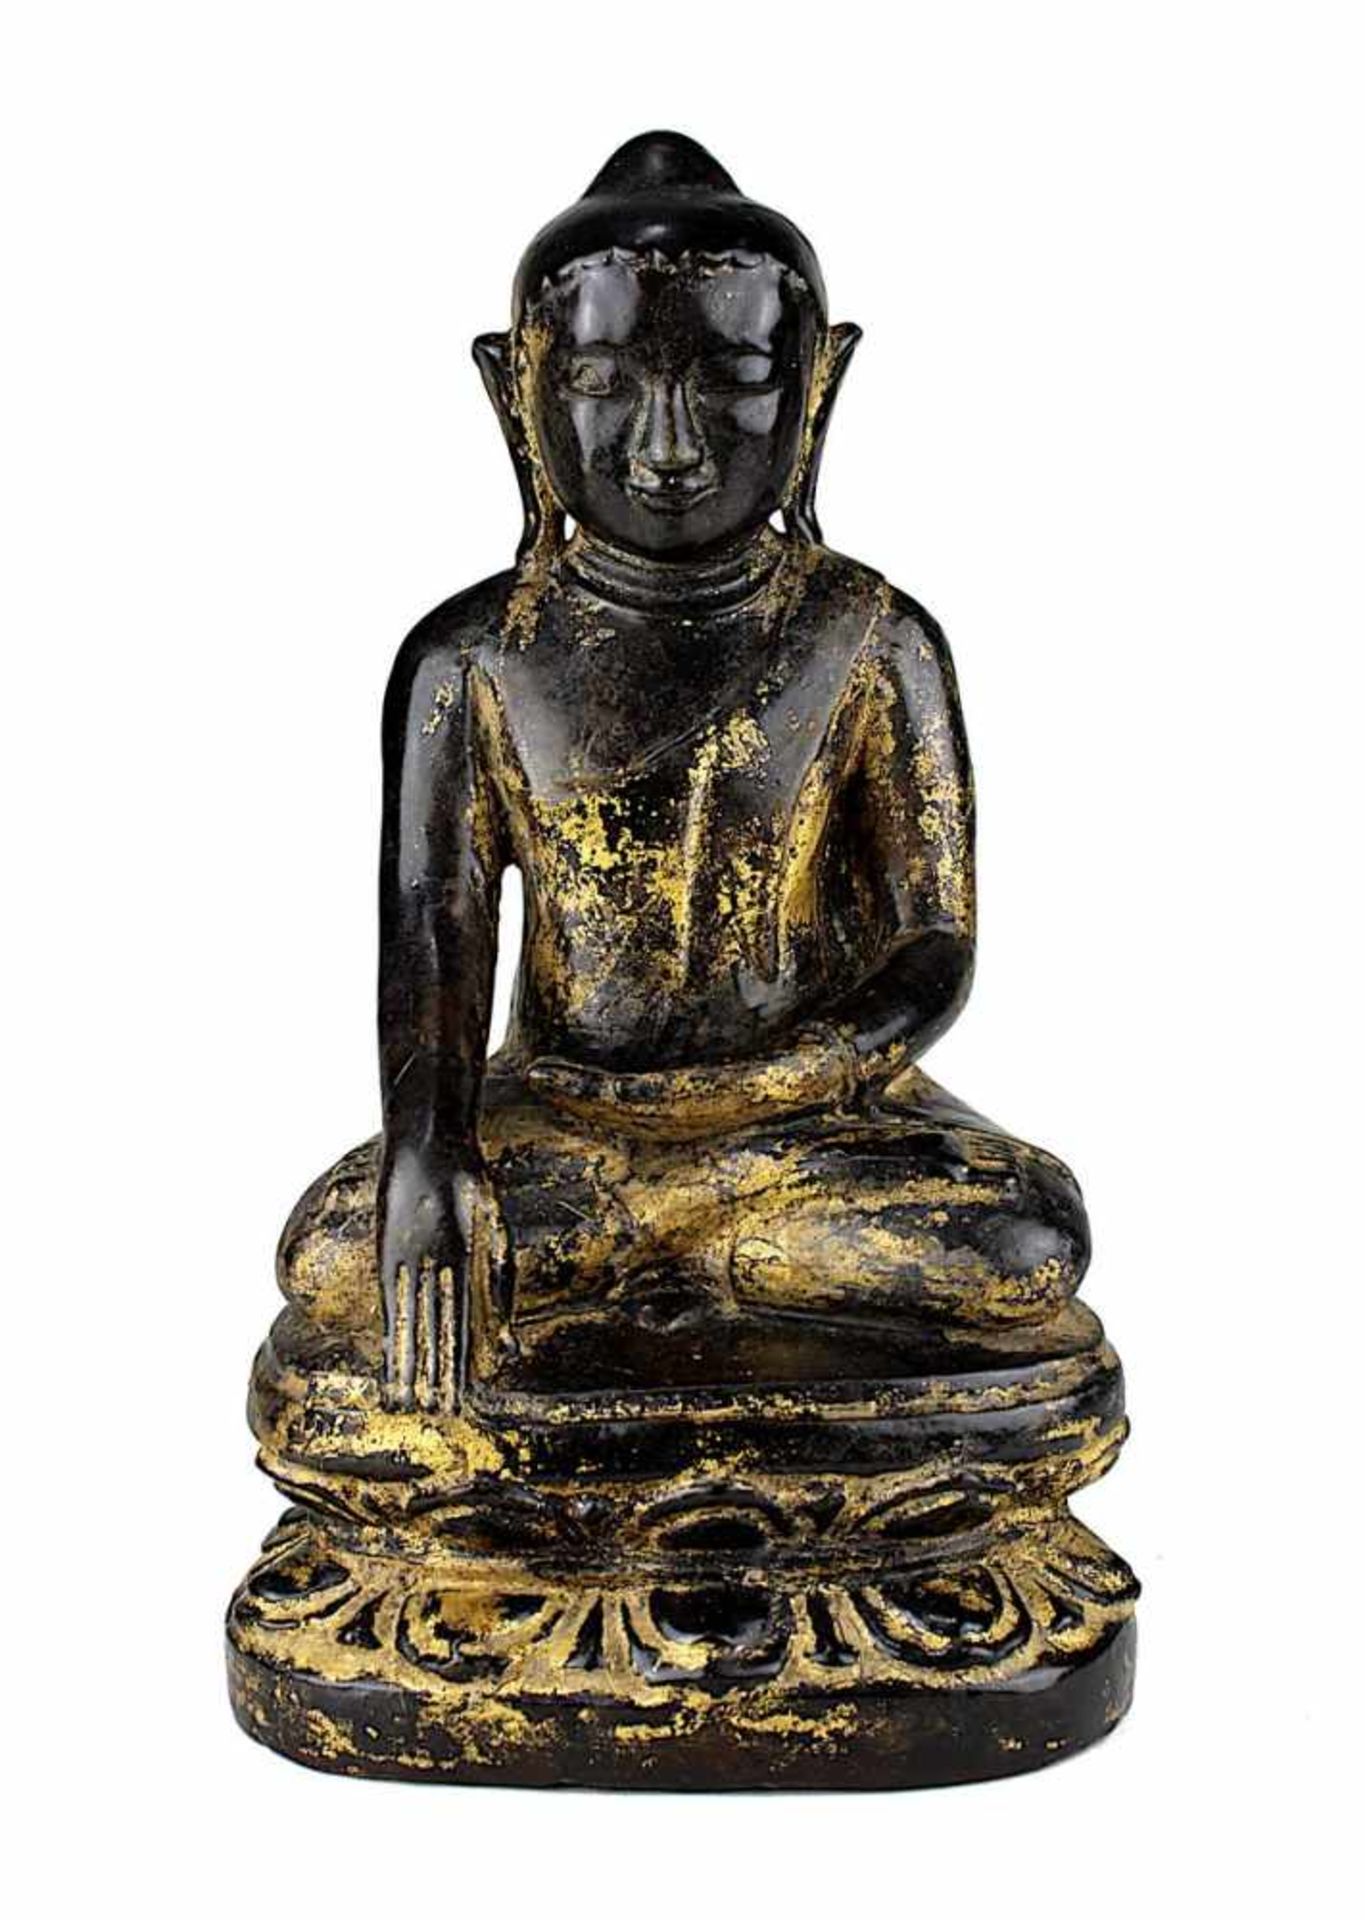 Keramik Buddha, Burma 19 Jh. In sitzender Haltung meditierender Buddha auf Lotosthron, schwarz